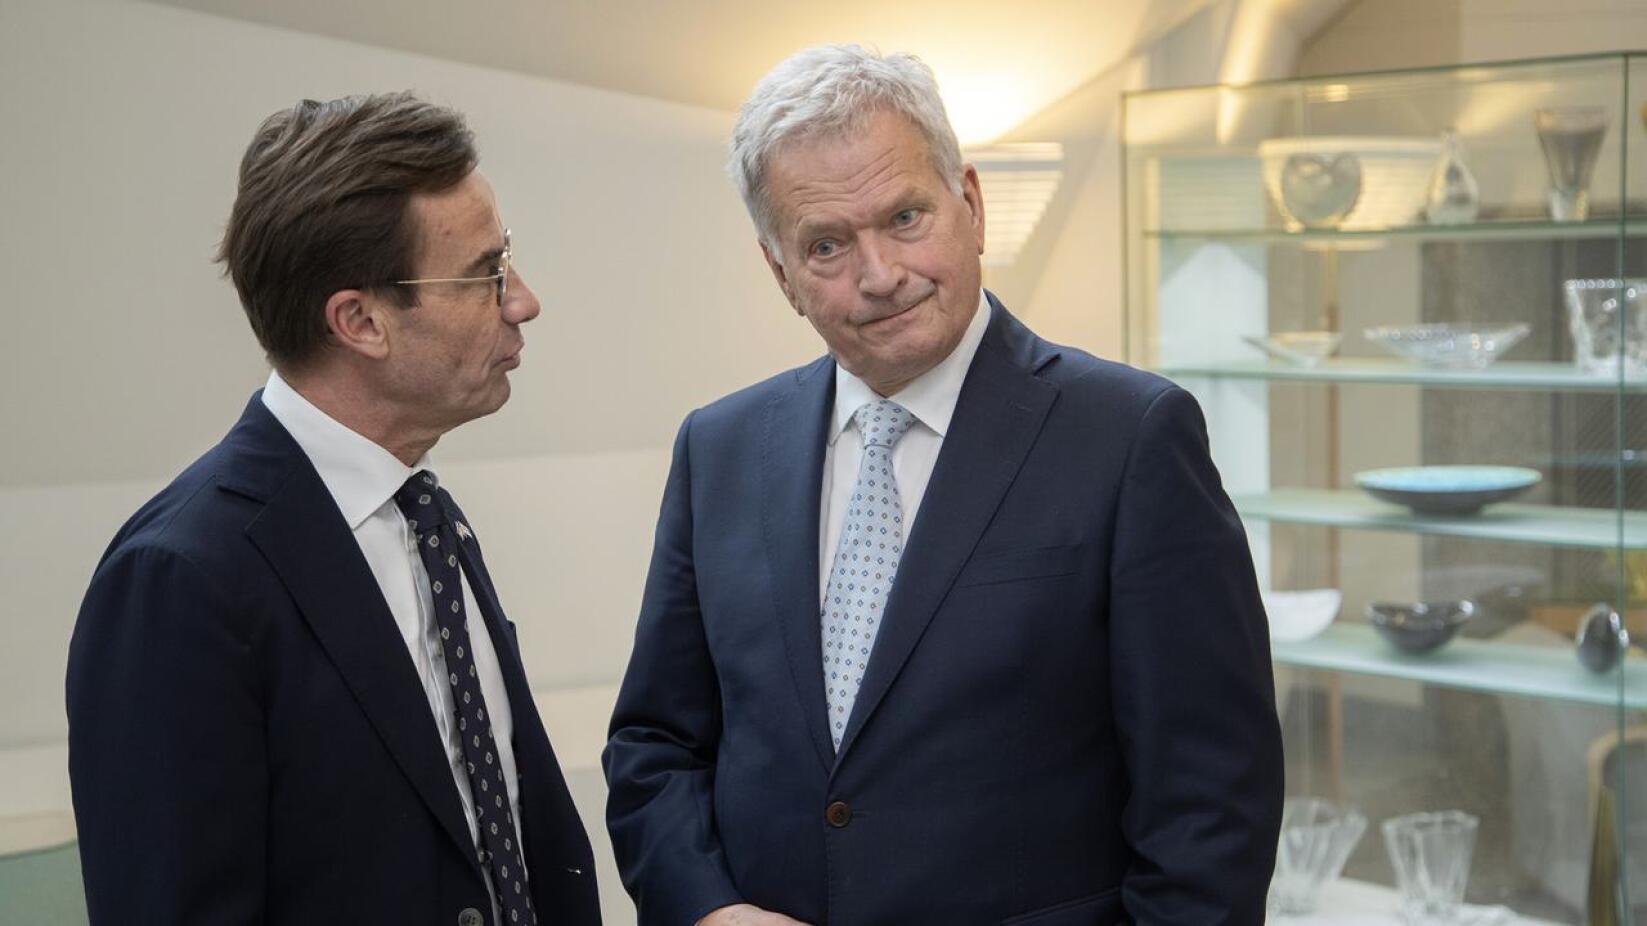 Ruotsin pääministeri Ulf Kristersson kertoi tiistaina julkisuudessa näyttävän todennäköiseltä, että Suomi menee Natoon ennen Ruotsia. Tasavallan presidentti Sauli Niinistö kävi keskustelun Kristerssonin kanssa ennen lähtöään torstaina Turkkiin.